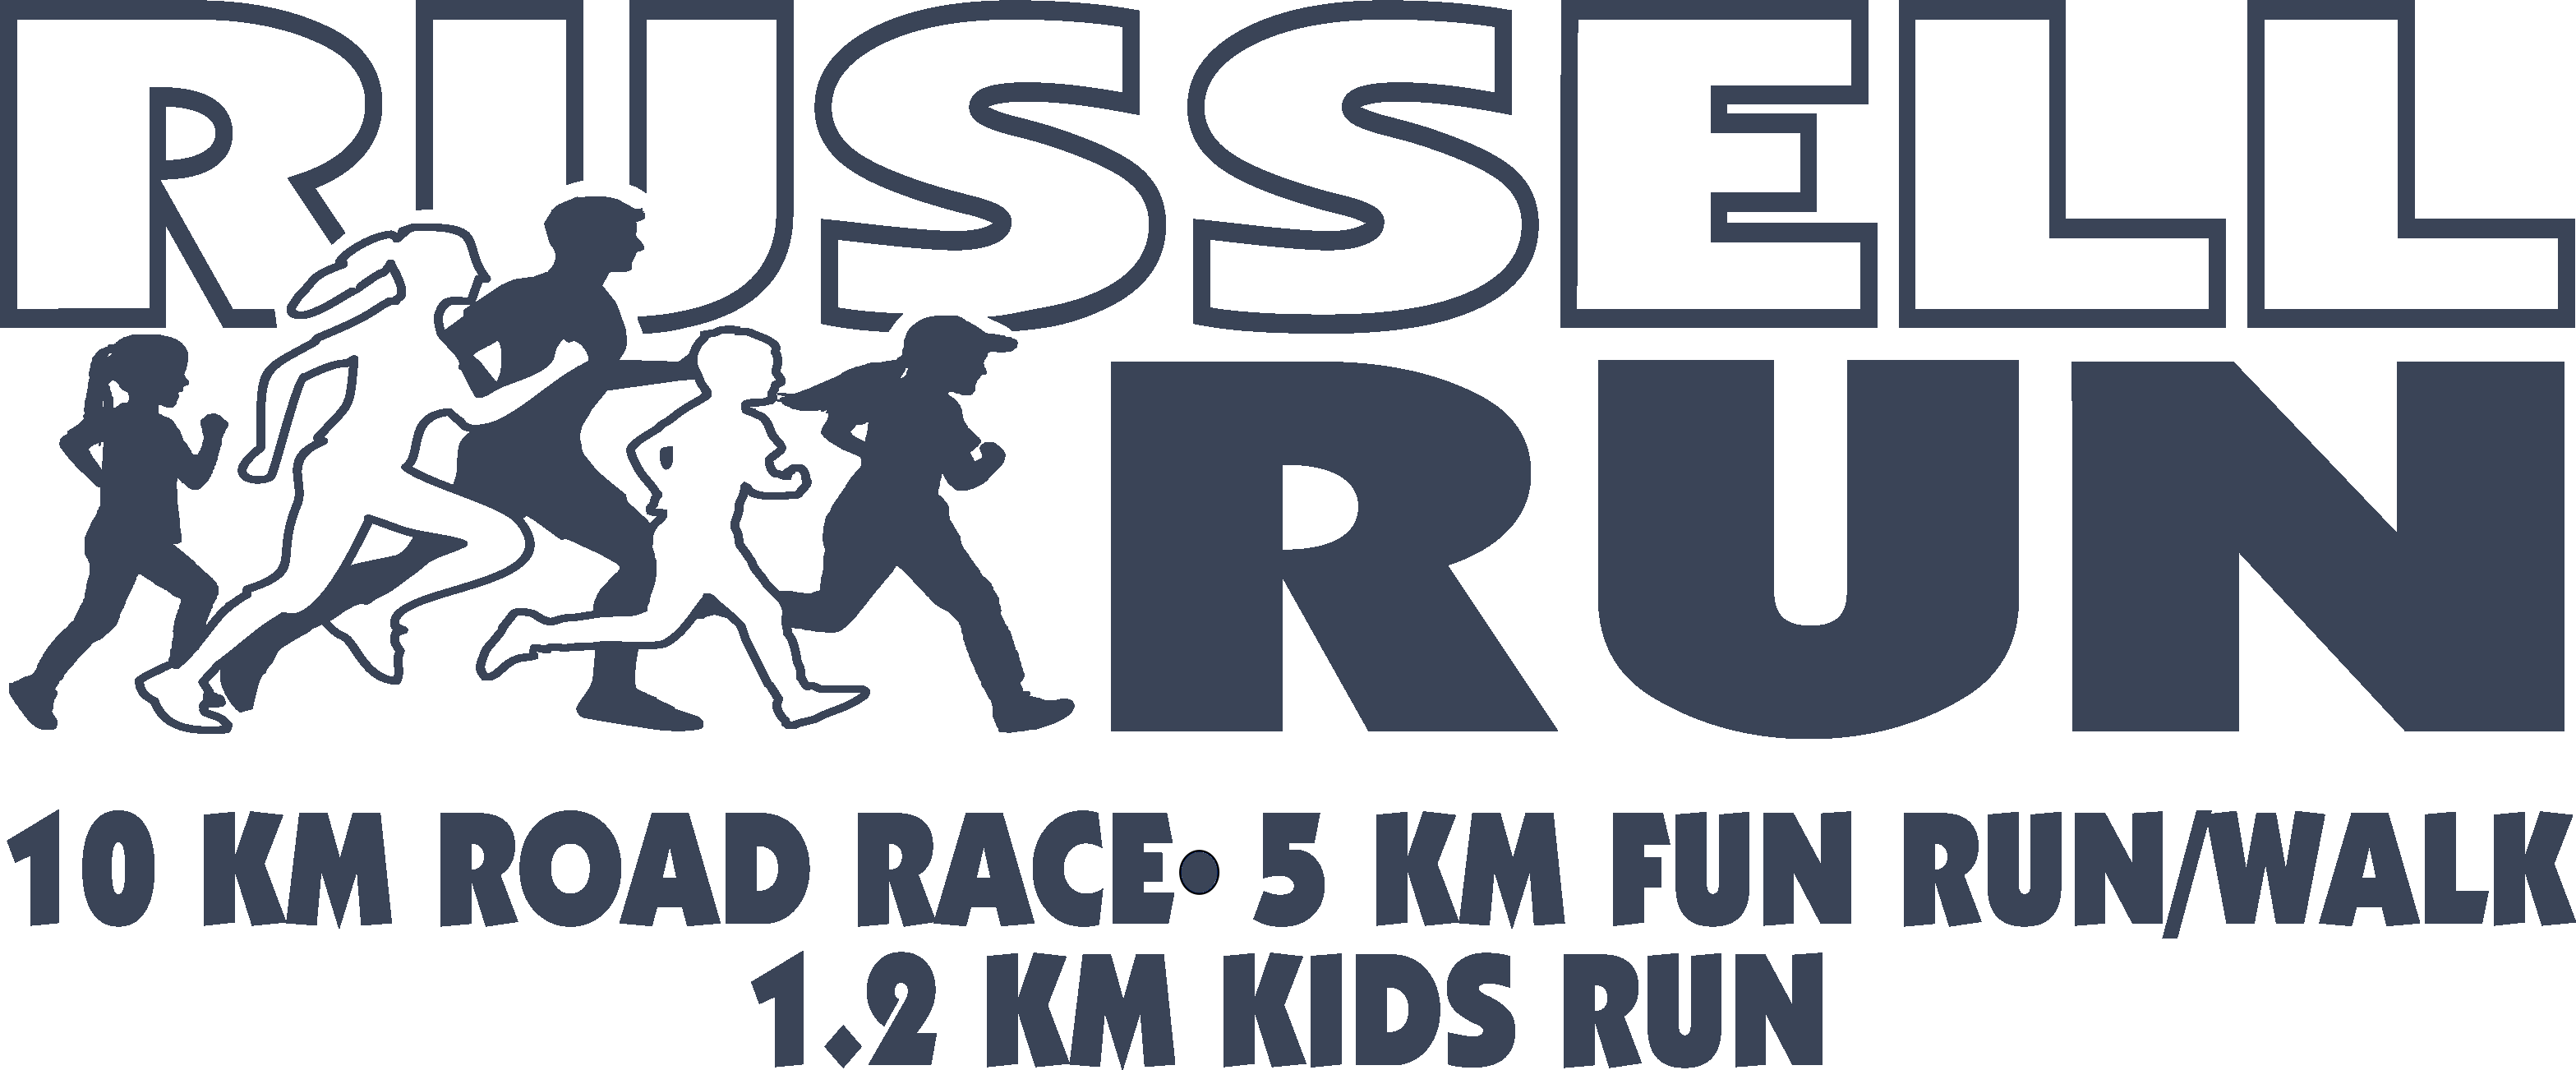 11th Annual Russell Run